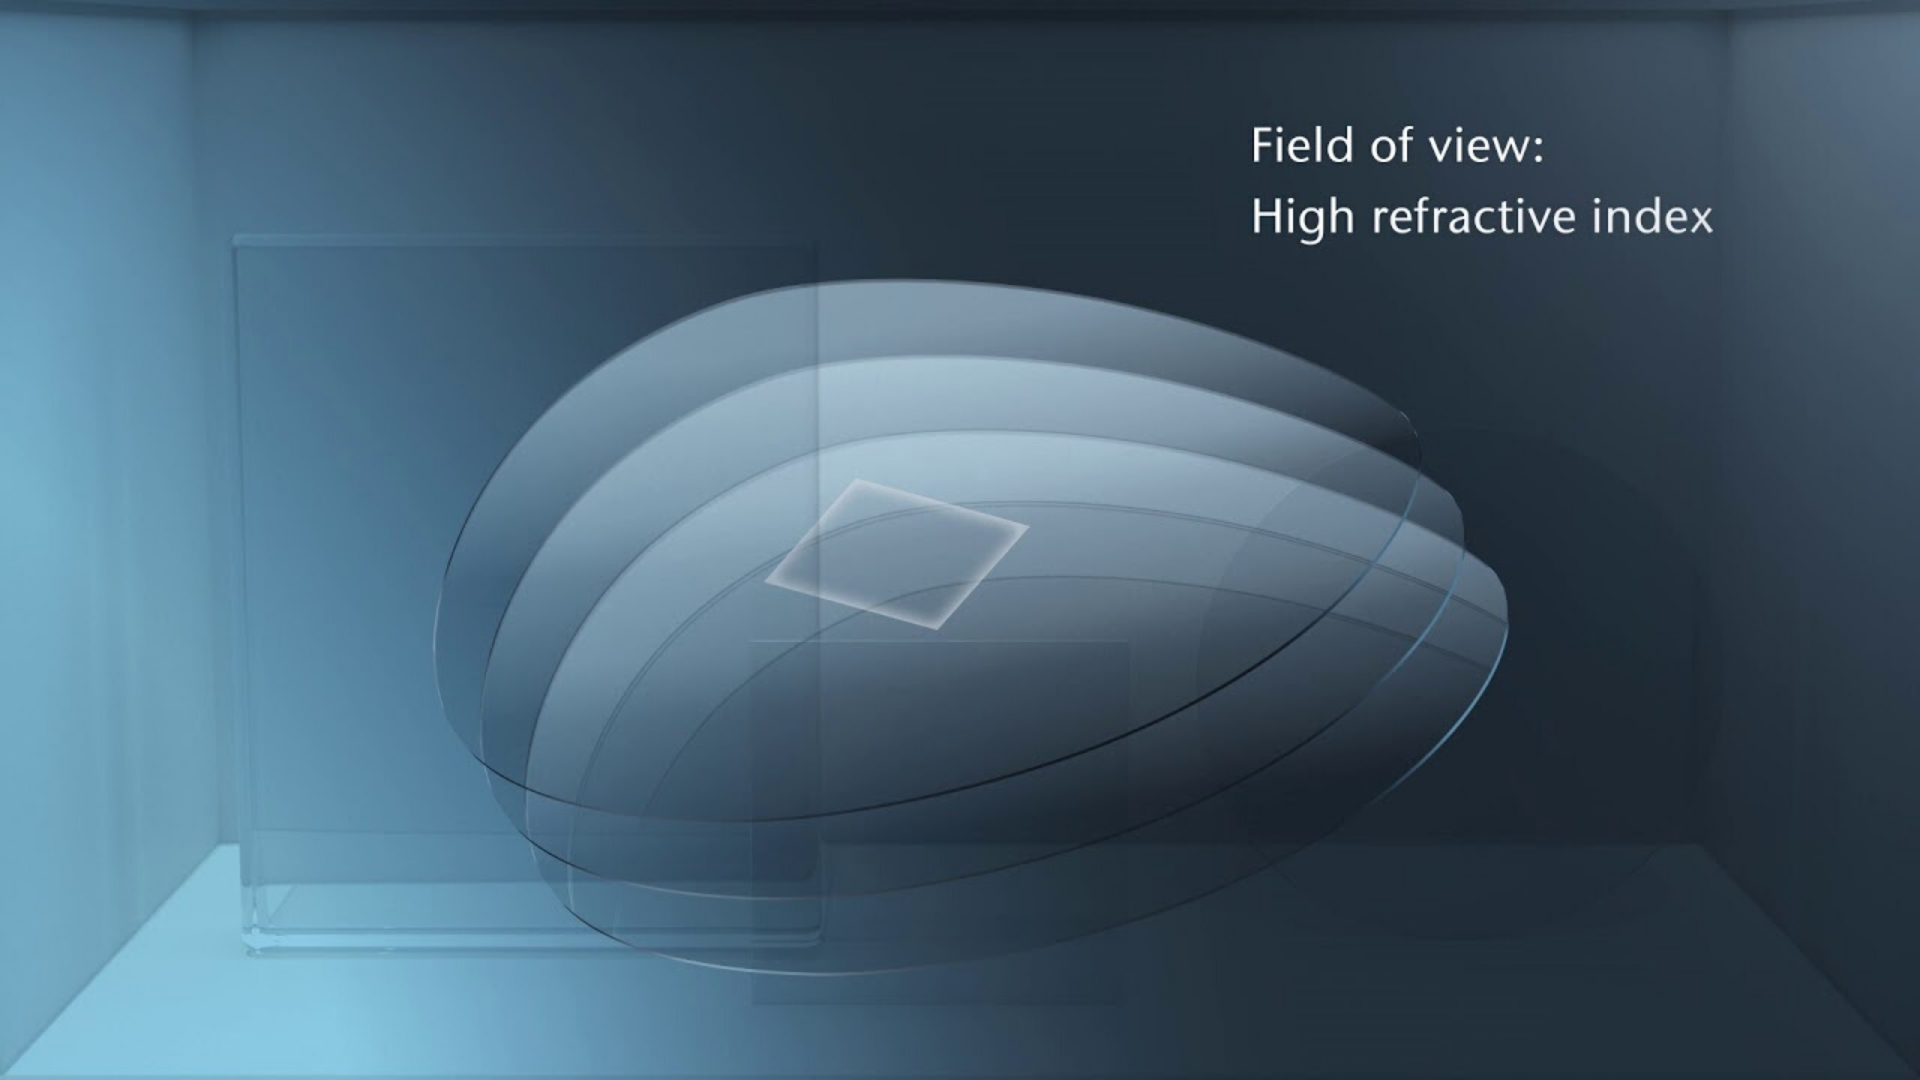 Klicken Sie hier, um zu erfahren, wie SCHOTT RealView® Glaswafer Augmented Reality-Bilder erzeugen